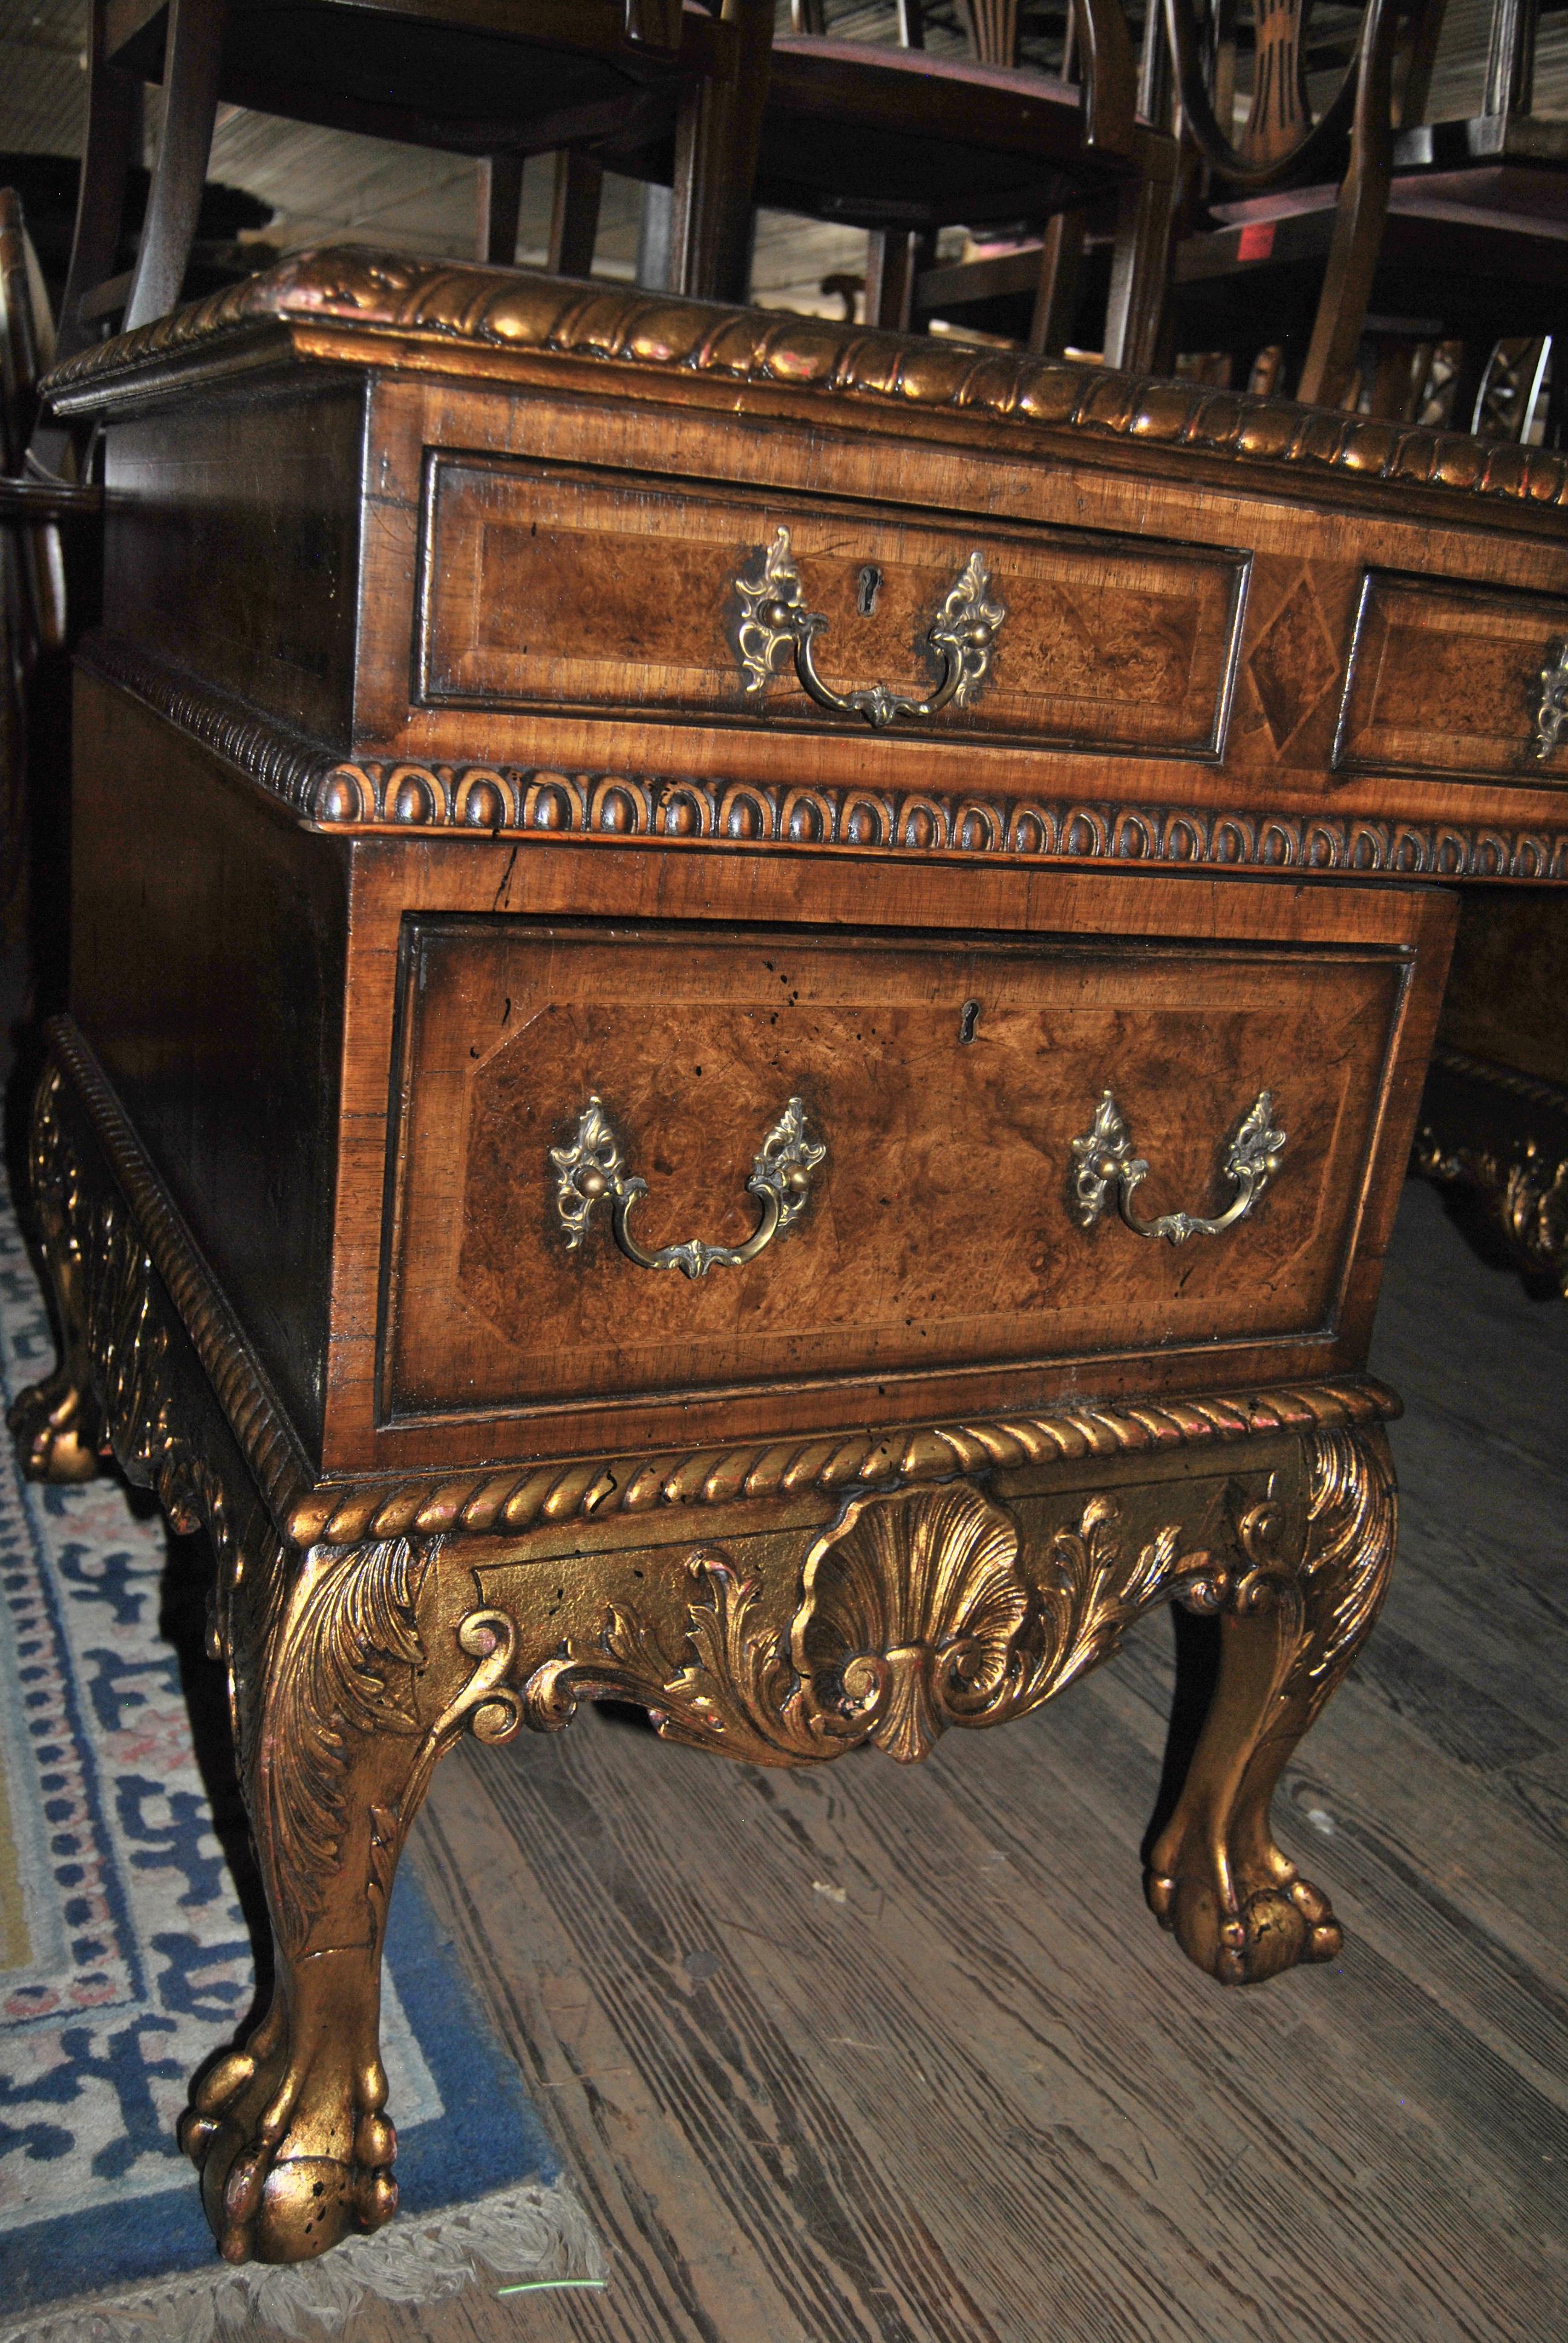 Il s'agit d'un bureau en noyer fabriqué en Angleterre, vers 1840. La partie supérieure présente une surface d'écriture en cuir vert joliment façonnée et ornée de motifs dorés. Le bord du plateau est orné de godrons sculptés à la main et dorés à l'or